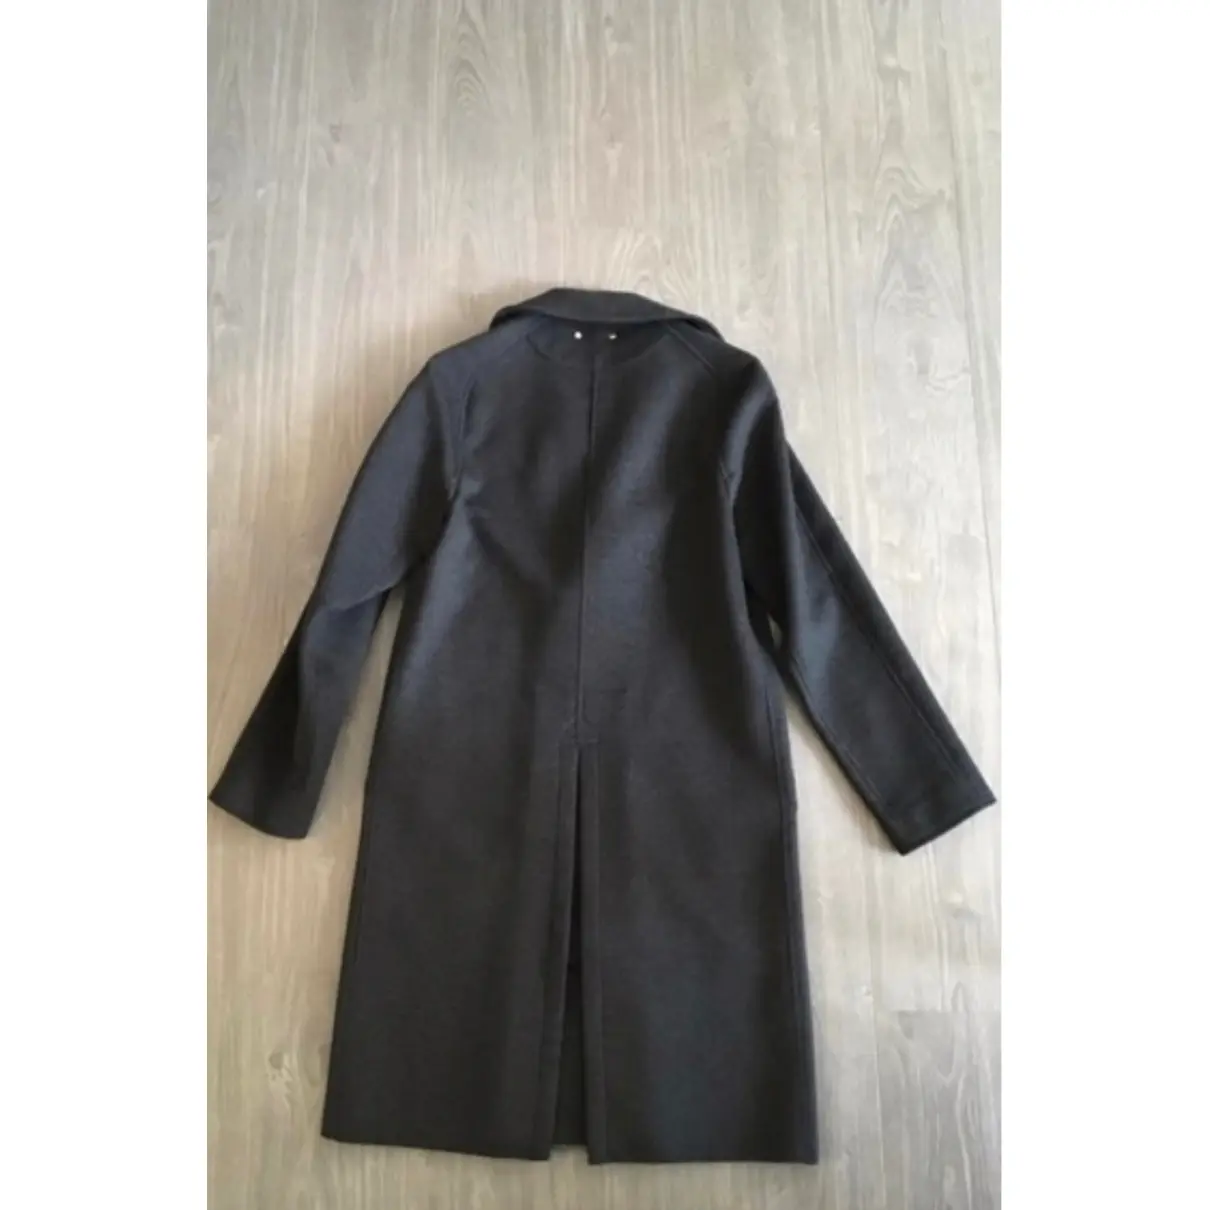 Buy Louis Vuitton Cashmere coat online